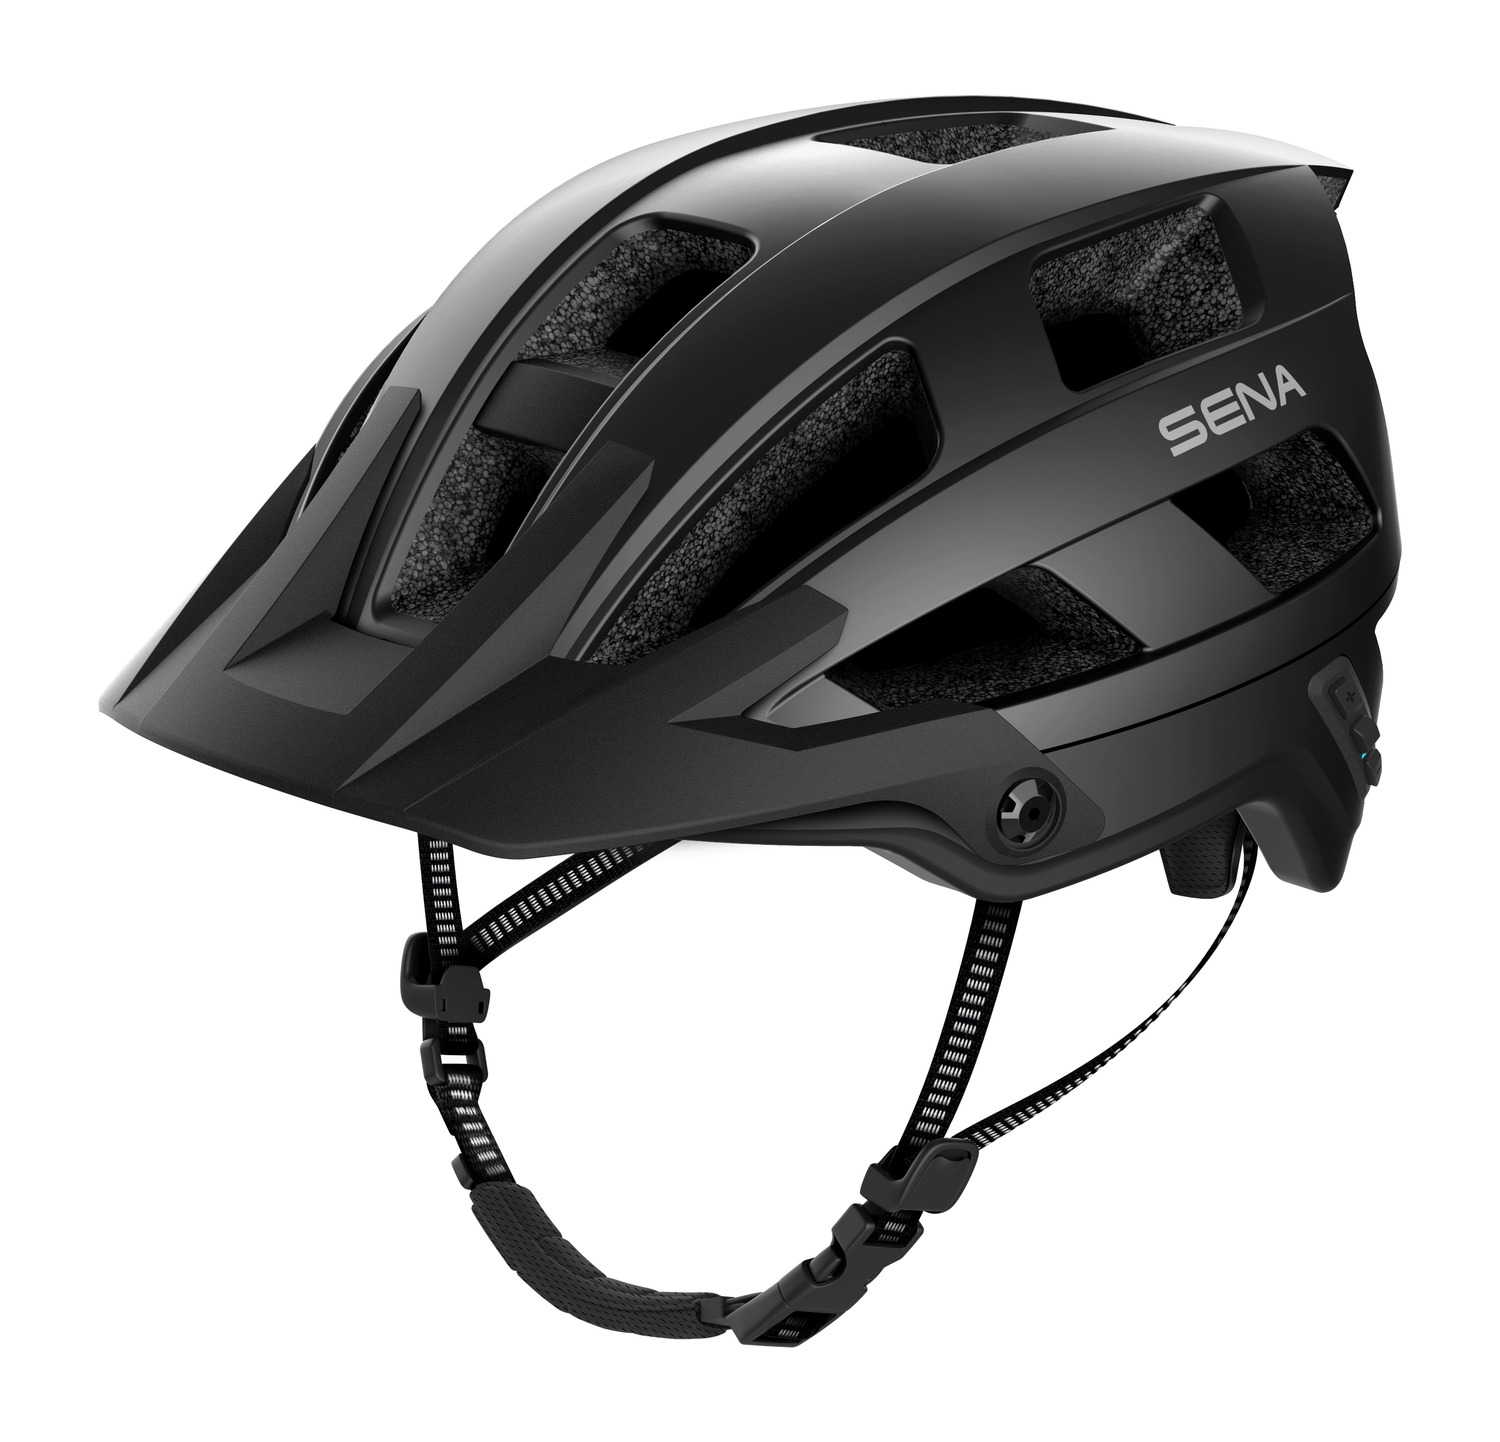 M1 EVO, Sena Smart MTB Helmet, Matt Black (New Processor)